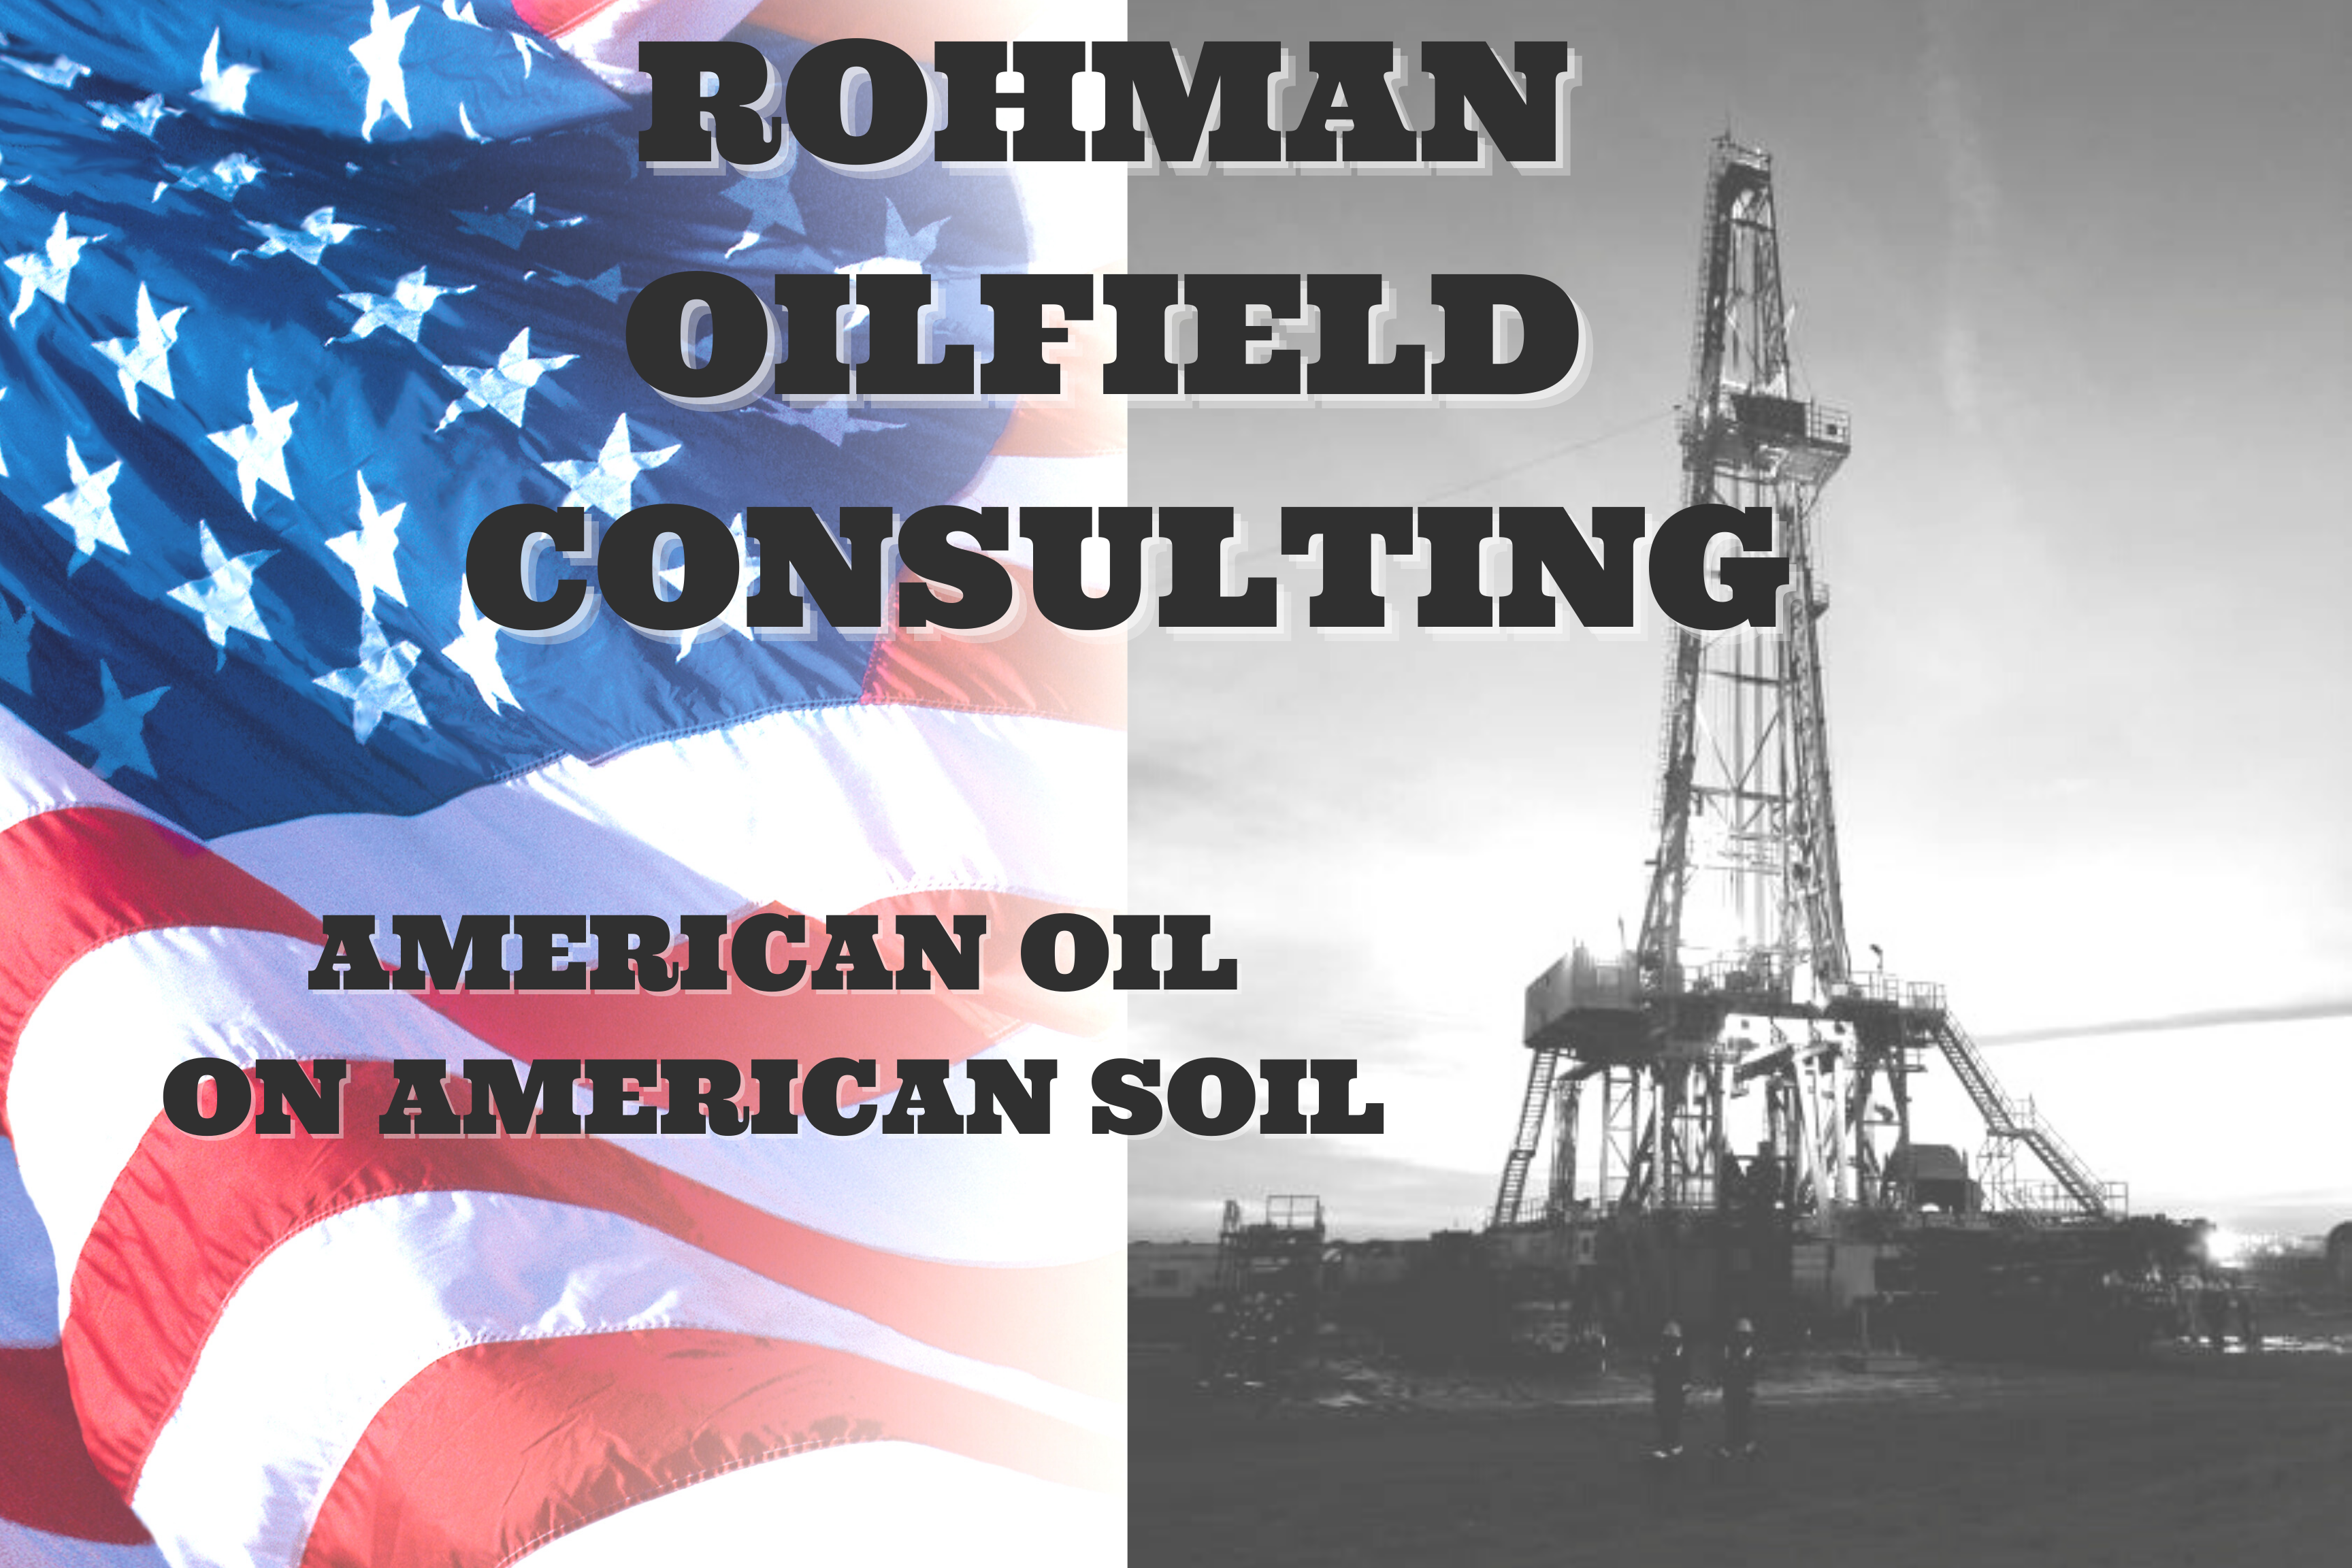 Rohman Oilfield Consulting ad